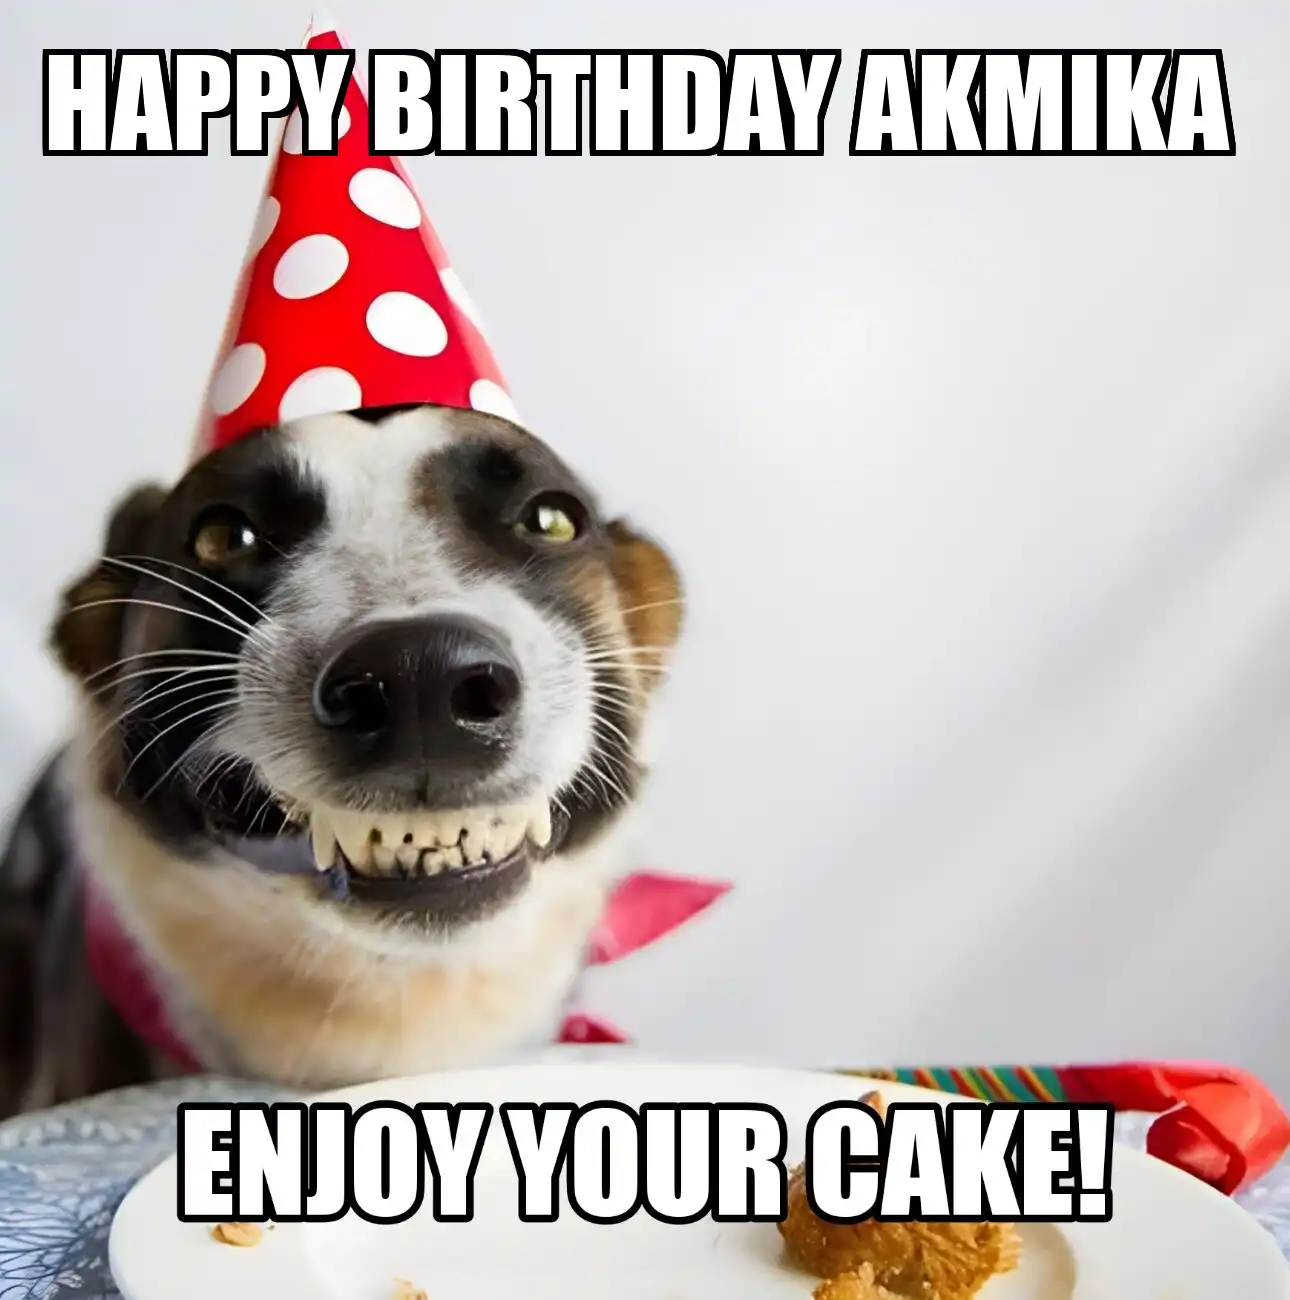 Happy Birthday Akmika Enjoy Your Cake Dog Meme